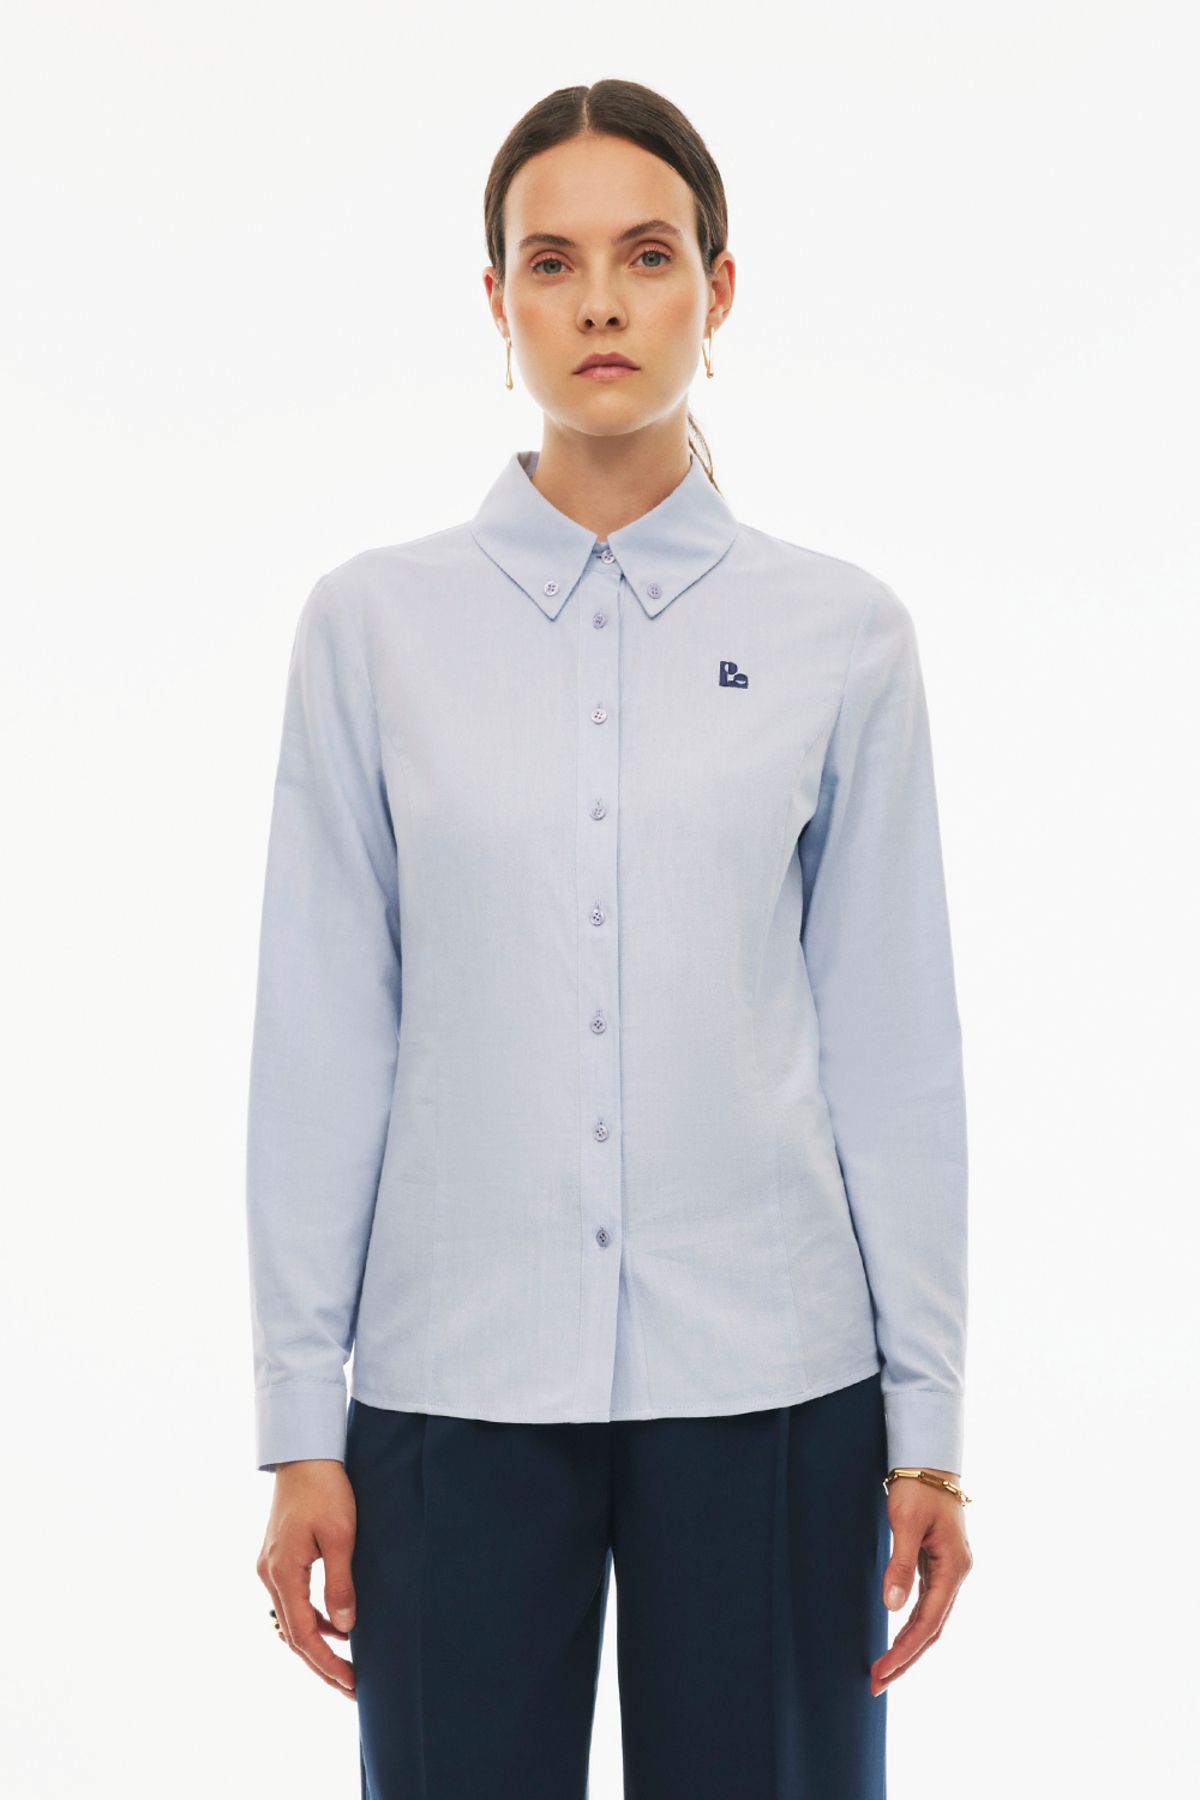 Perspective Jevins Regular Fit Standart Boy Gömlek Yaka Açık Mavi Renk Kadın Gömlek